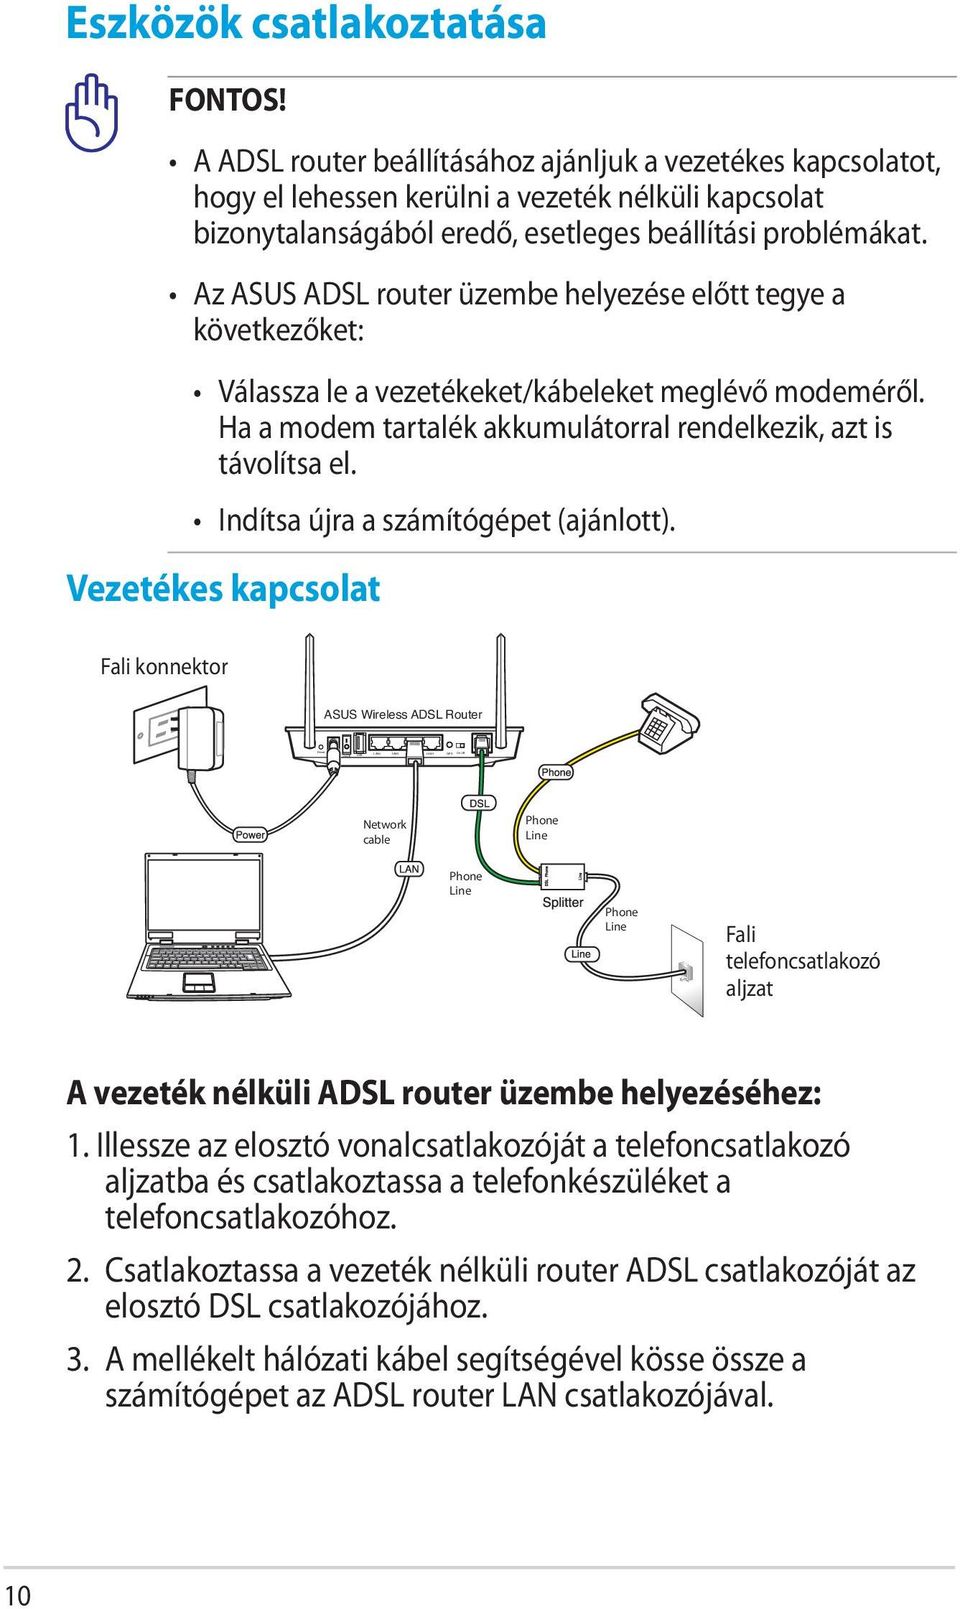 Az ASUS ADSL router üzembe helyezése előtt tegye a következőket: Válassza le a vezetékeket/kábeleket meglévő modeméről. Ha a modem tartalék akkumulátorral rendelkezik, azt is távolítsa el.